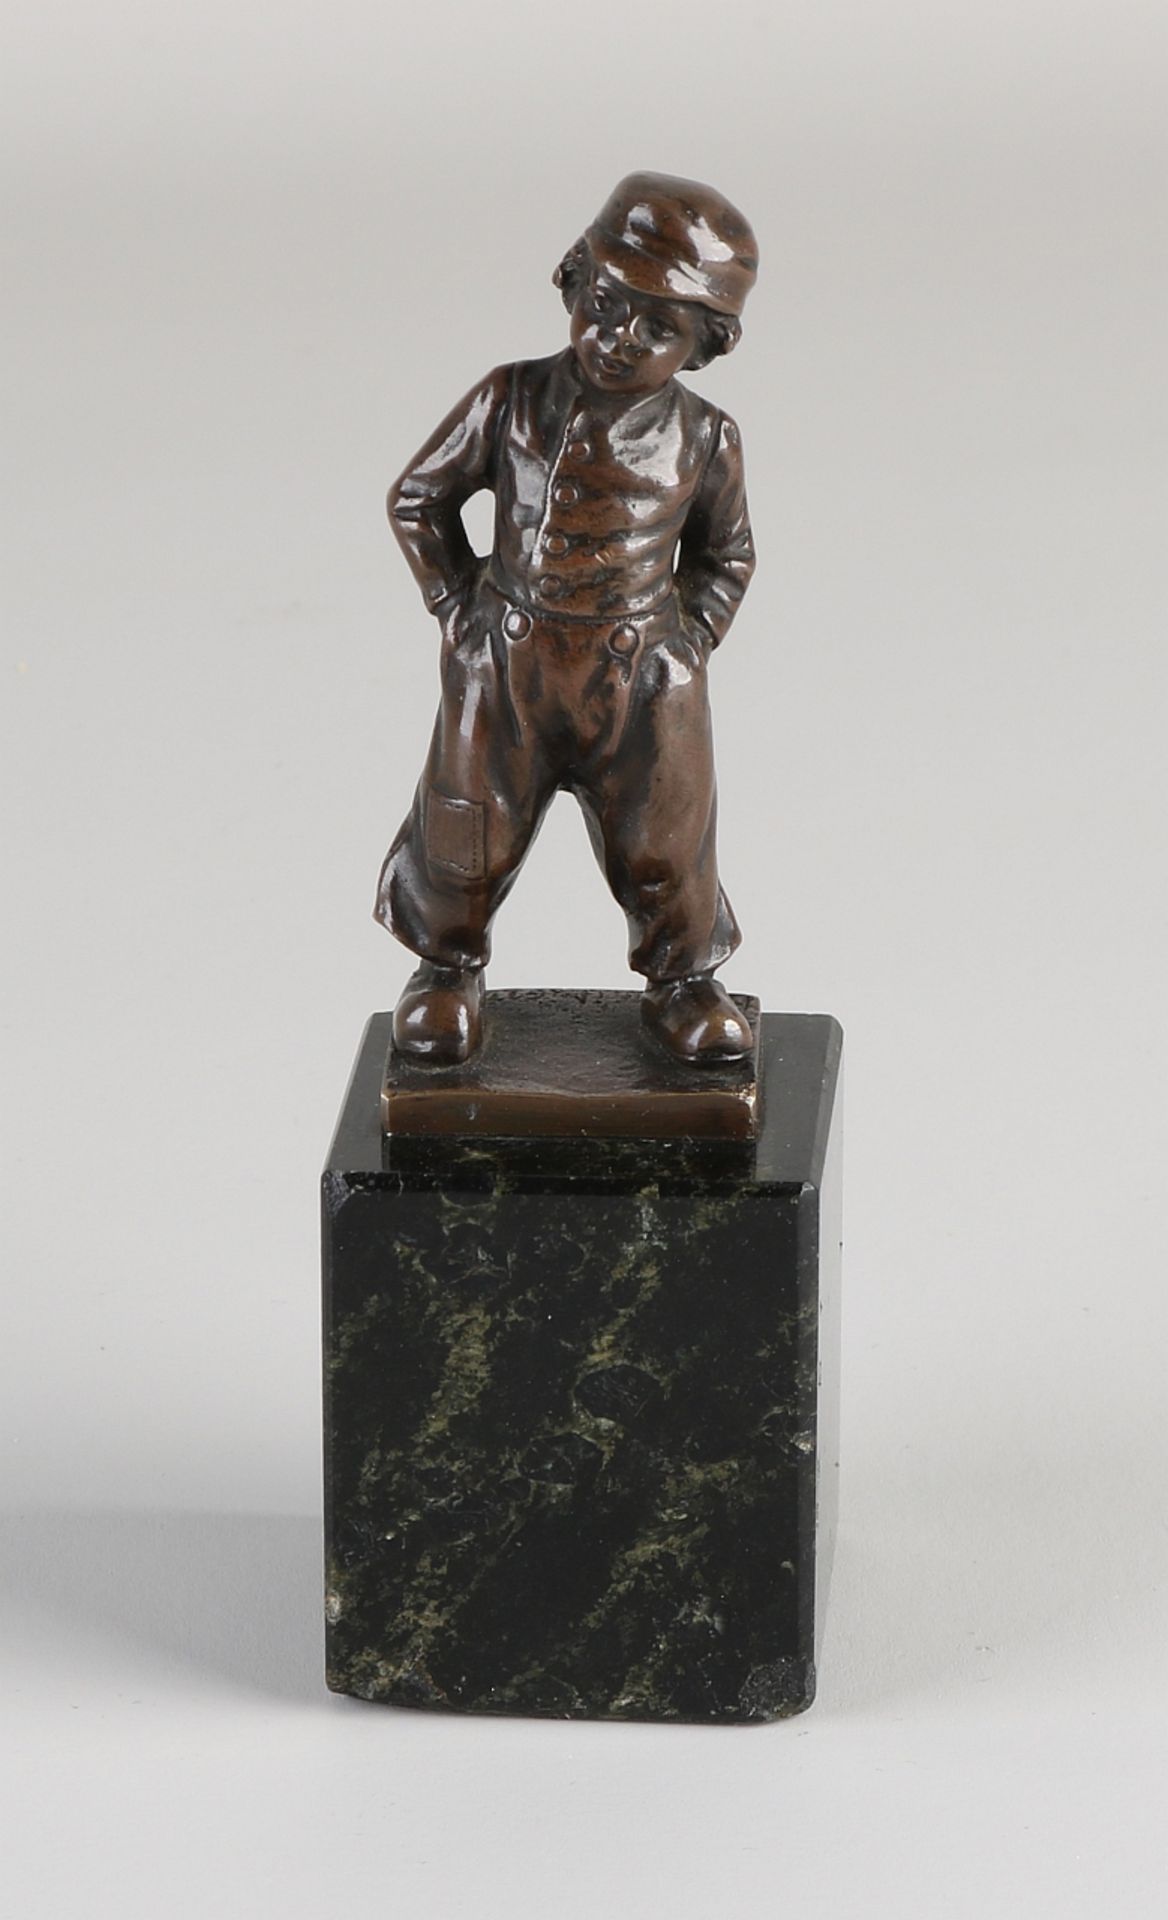 Antique bronze figure, Boy on wooden shoes